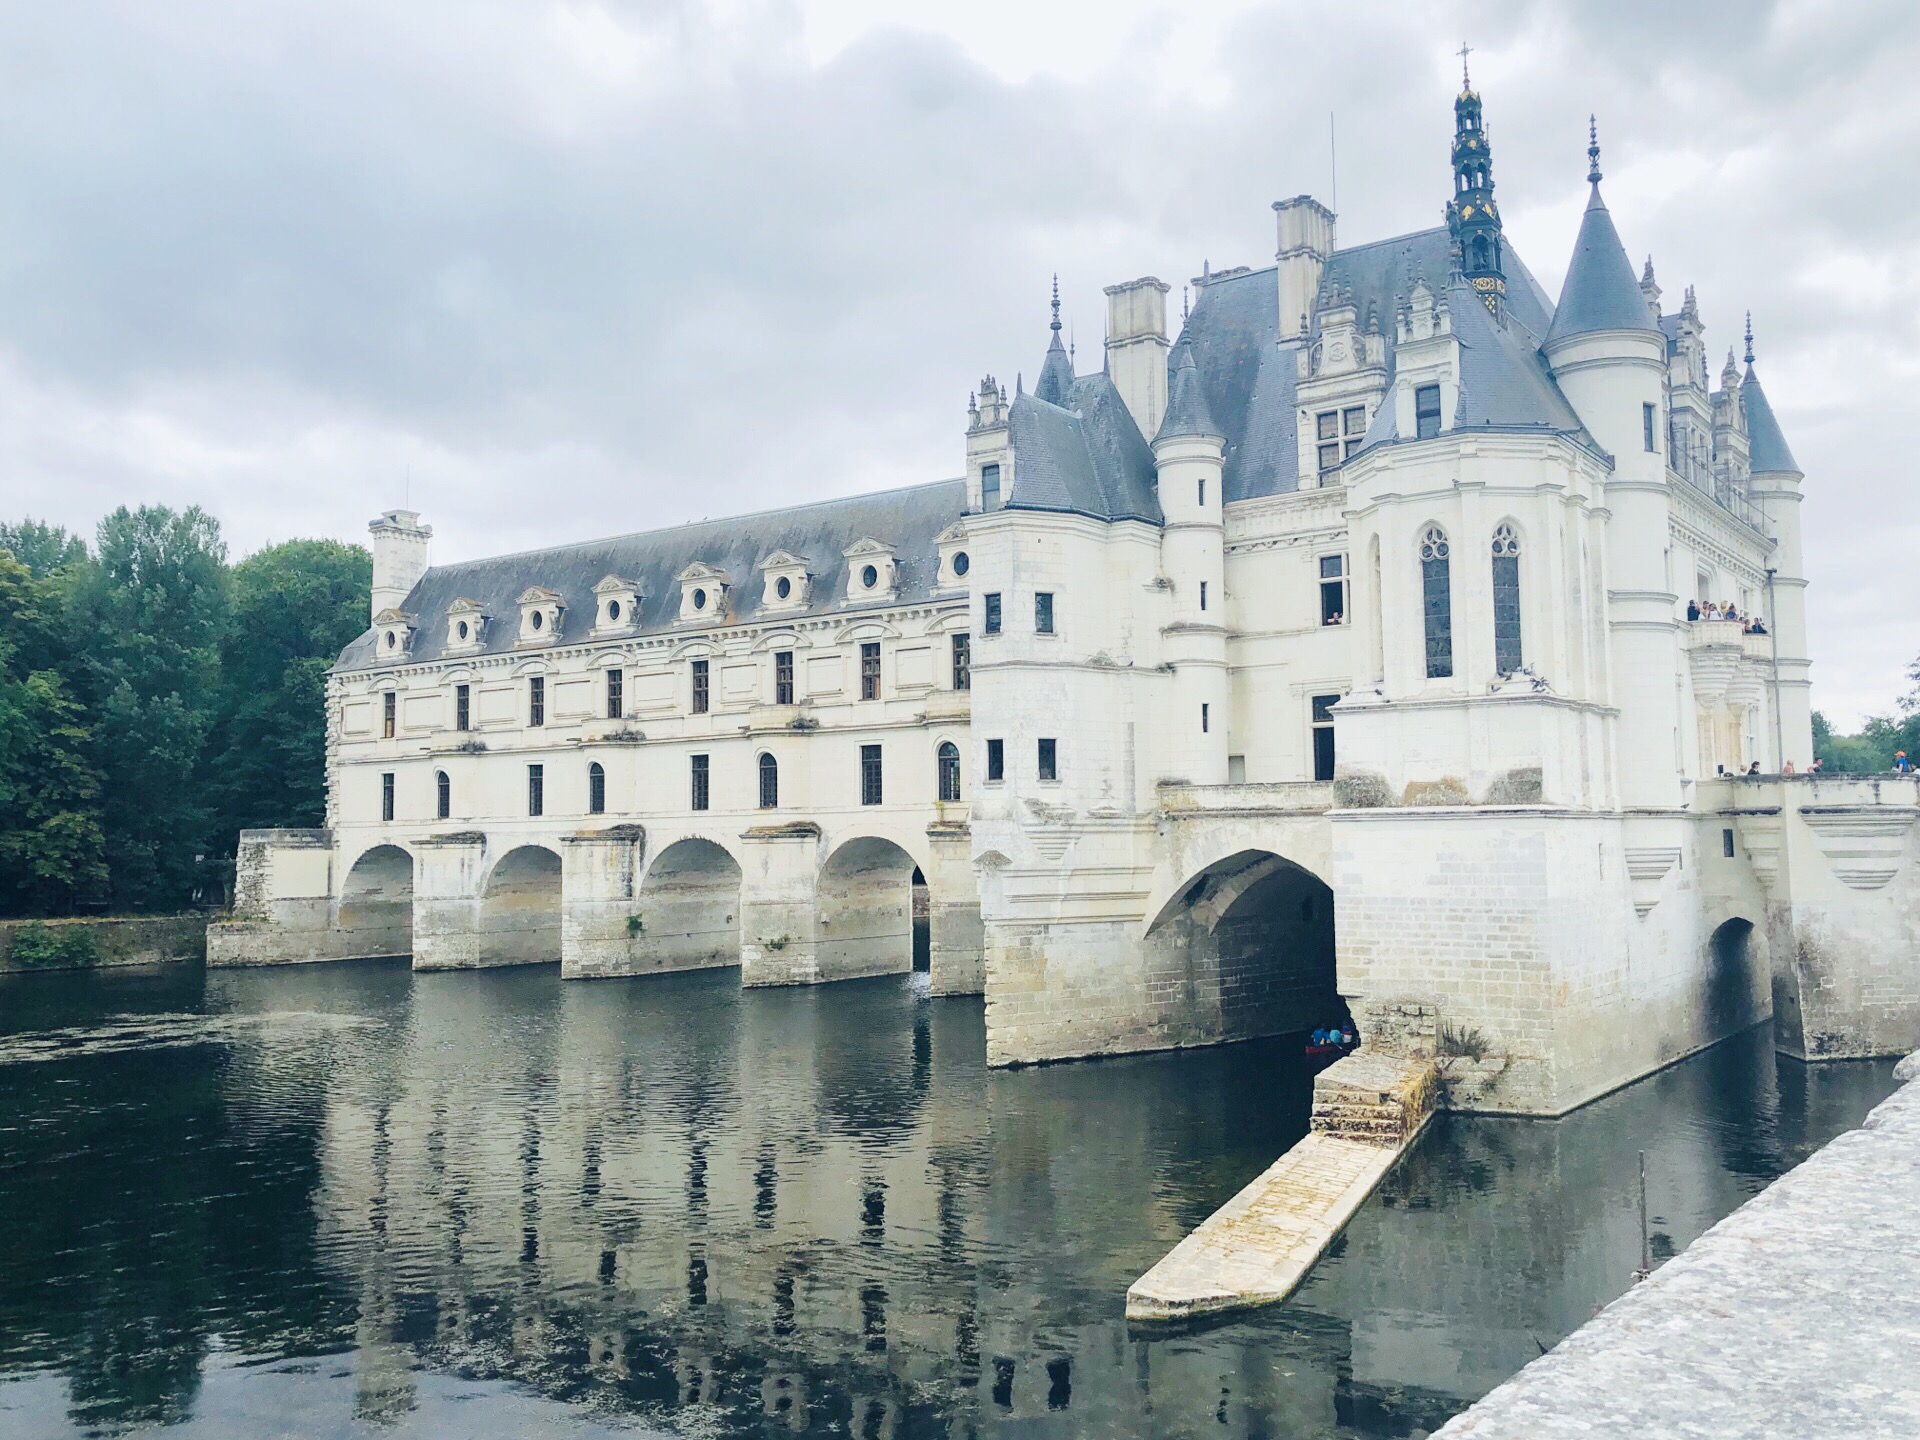 法国施农舍城堡，城堡建立在卢瓦尔河的支流 谢尔河上，由五个拱形的桥孔支撑让河水潺潺而过。舍农索城堡混